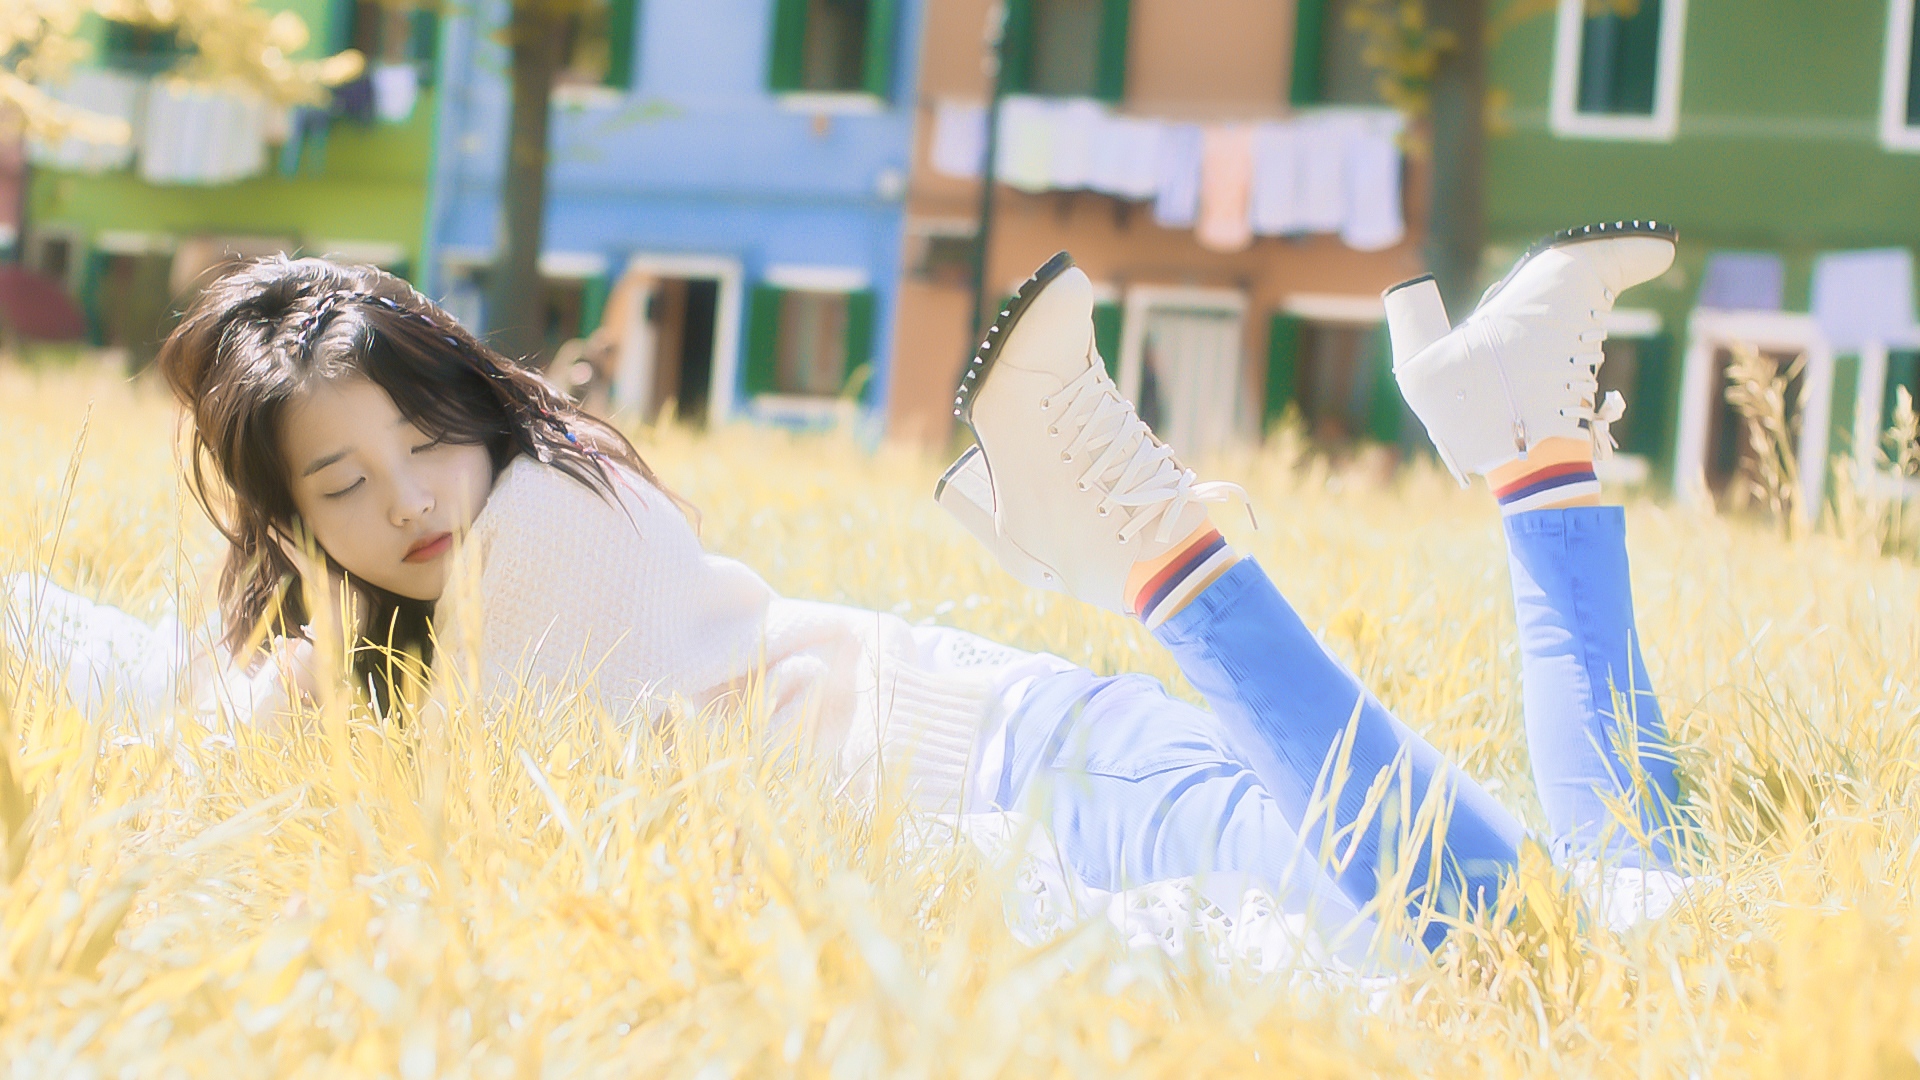 IU Iu Lee Ji Eun Women Outdoors Outdoors Brunette Legs Grass Closed Eyes Lying Down 1920x1080